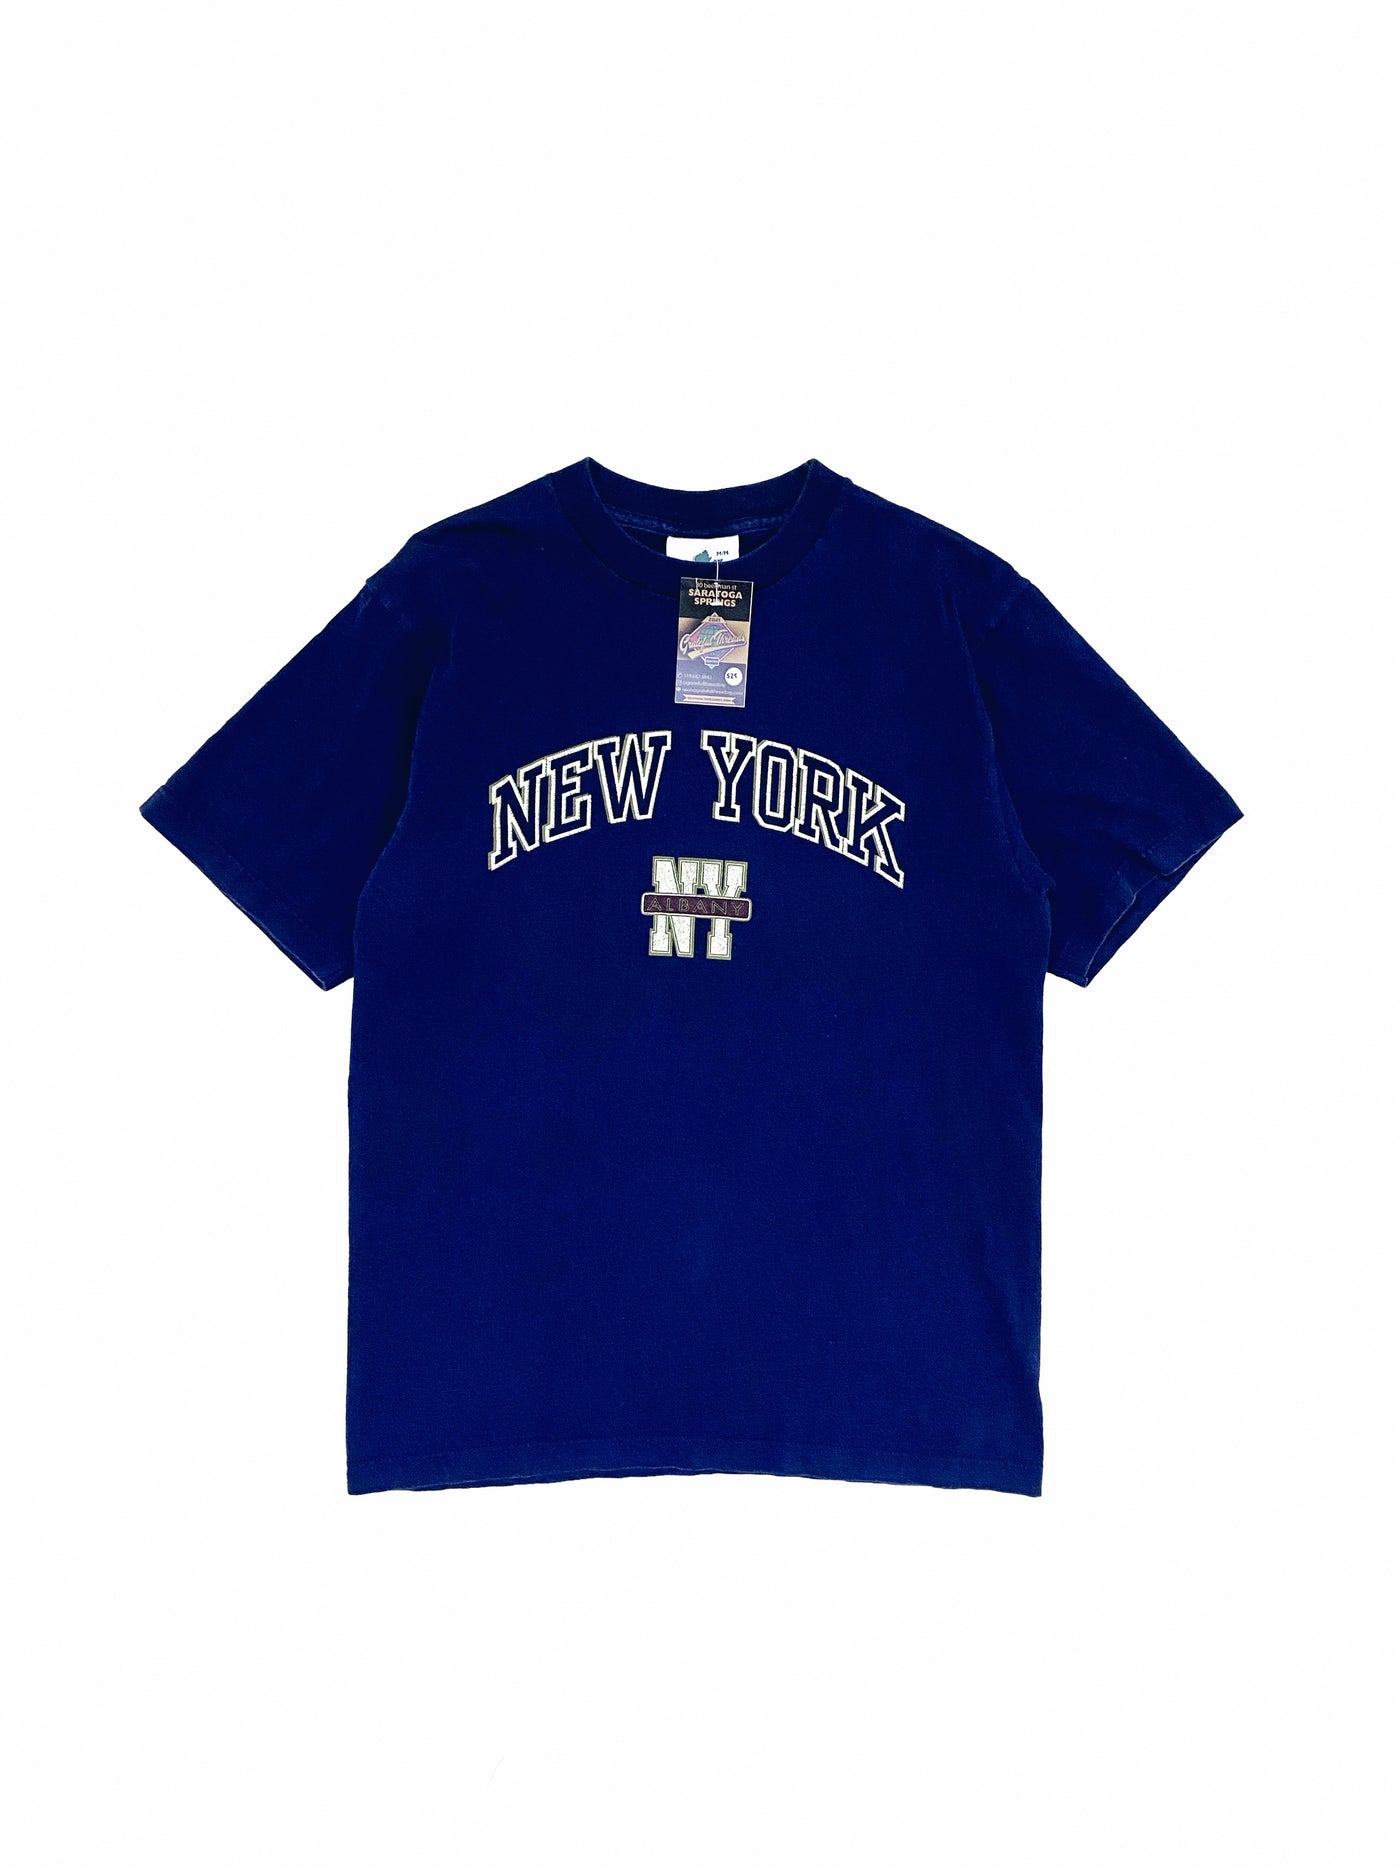 Vintage 90s Albany, NY T-Shirt